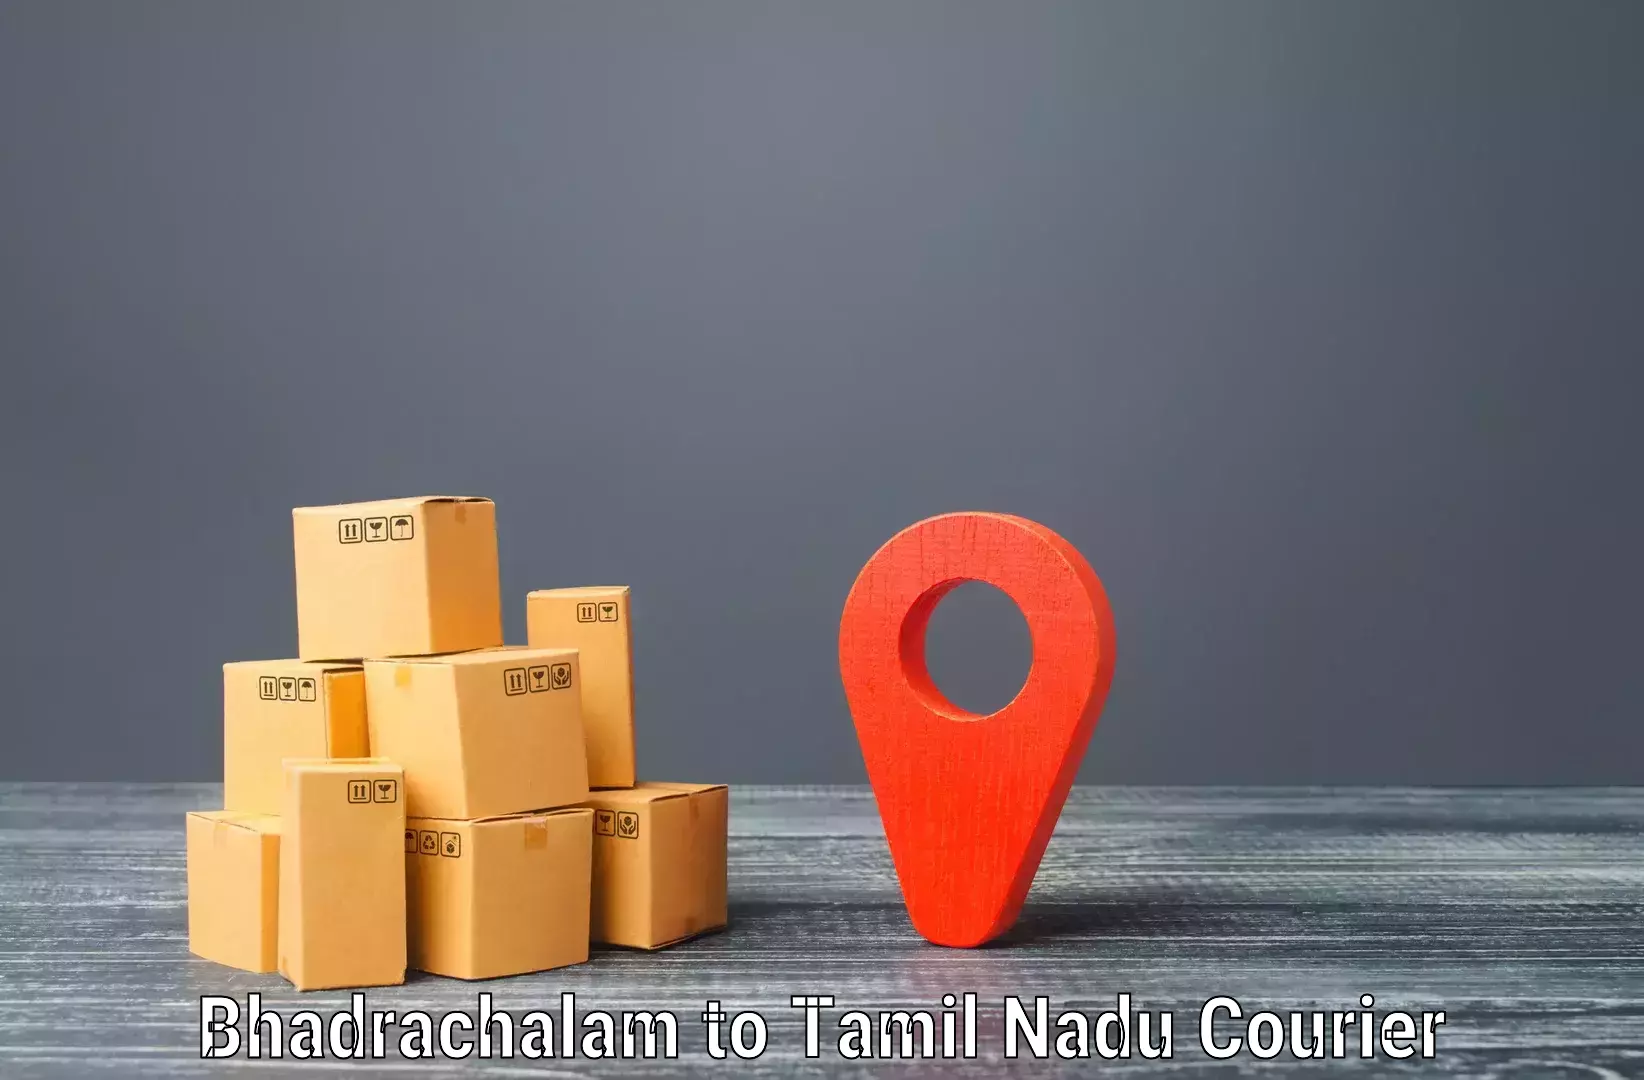 Urban courier service Bhadrachalam to Tirukkoyilur